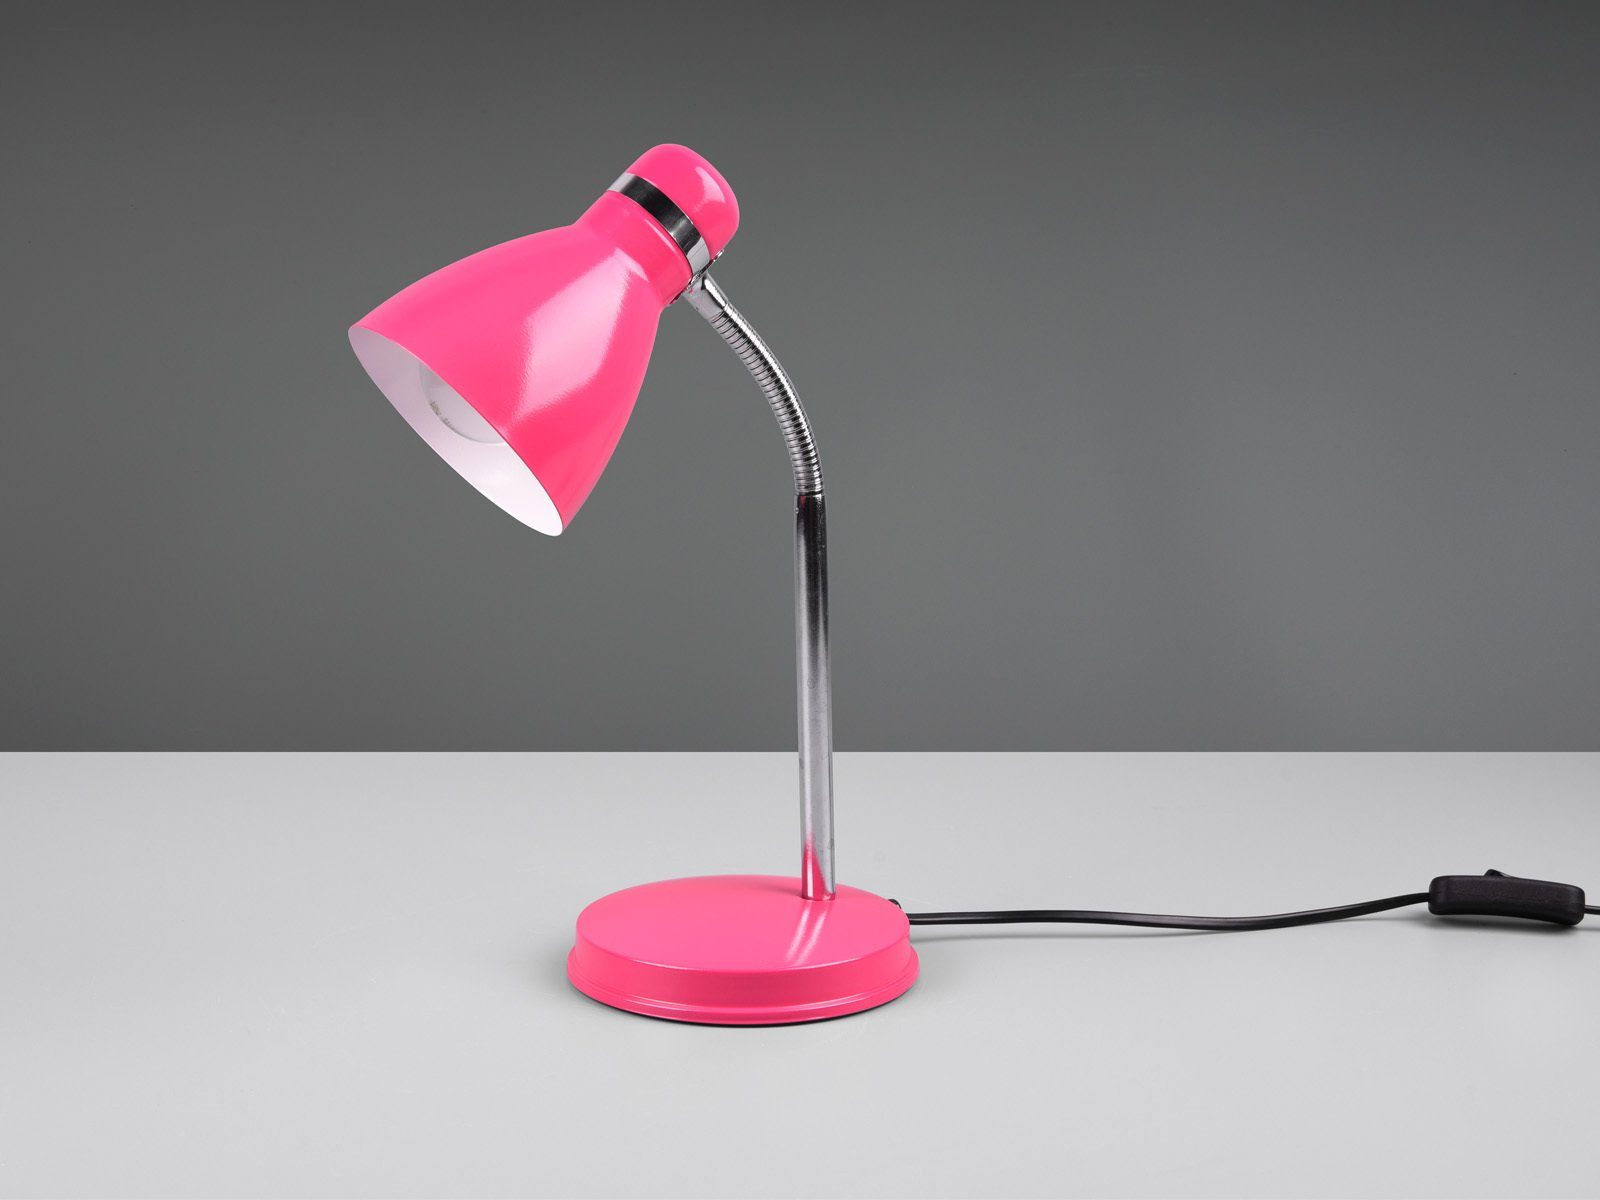 Schreibtischlampe, meineWunschleuchte 33cm & Pink, Warmweiß, Schreibtischbeleuchtung wechselbar, Leselampe Chrom-Pink LED Arbeitsplatz-leuchte H LED